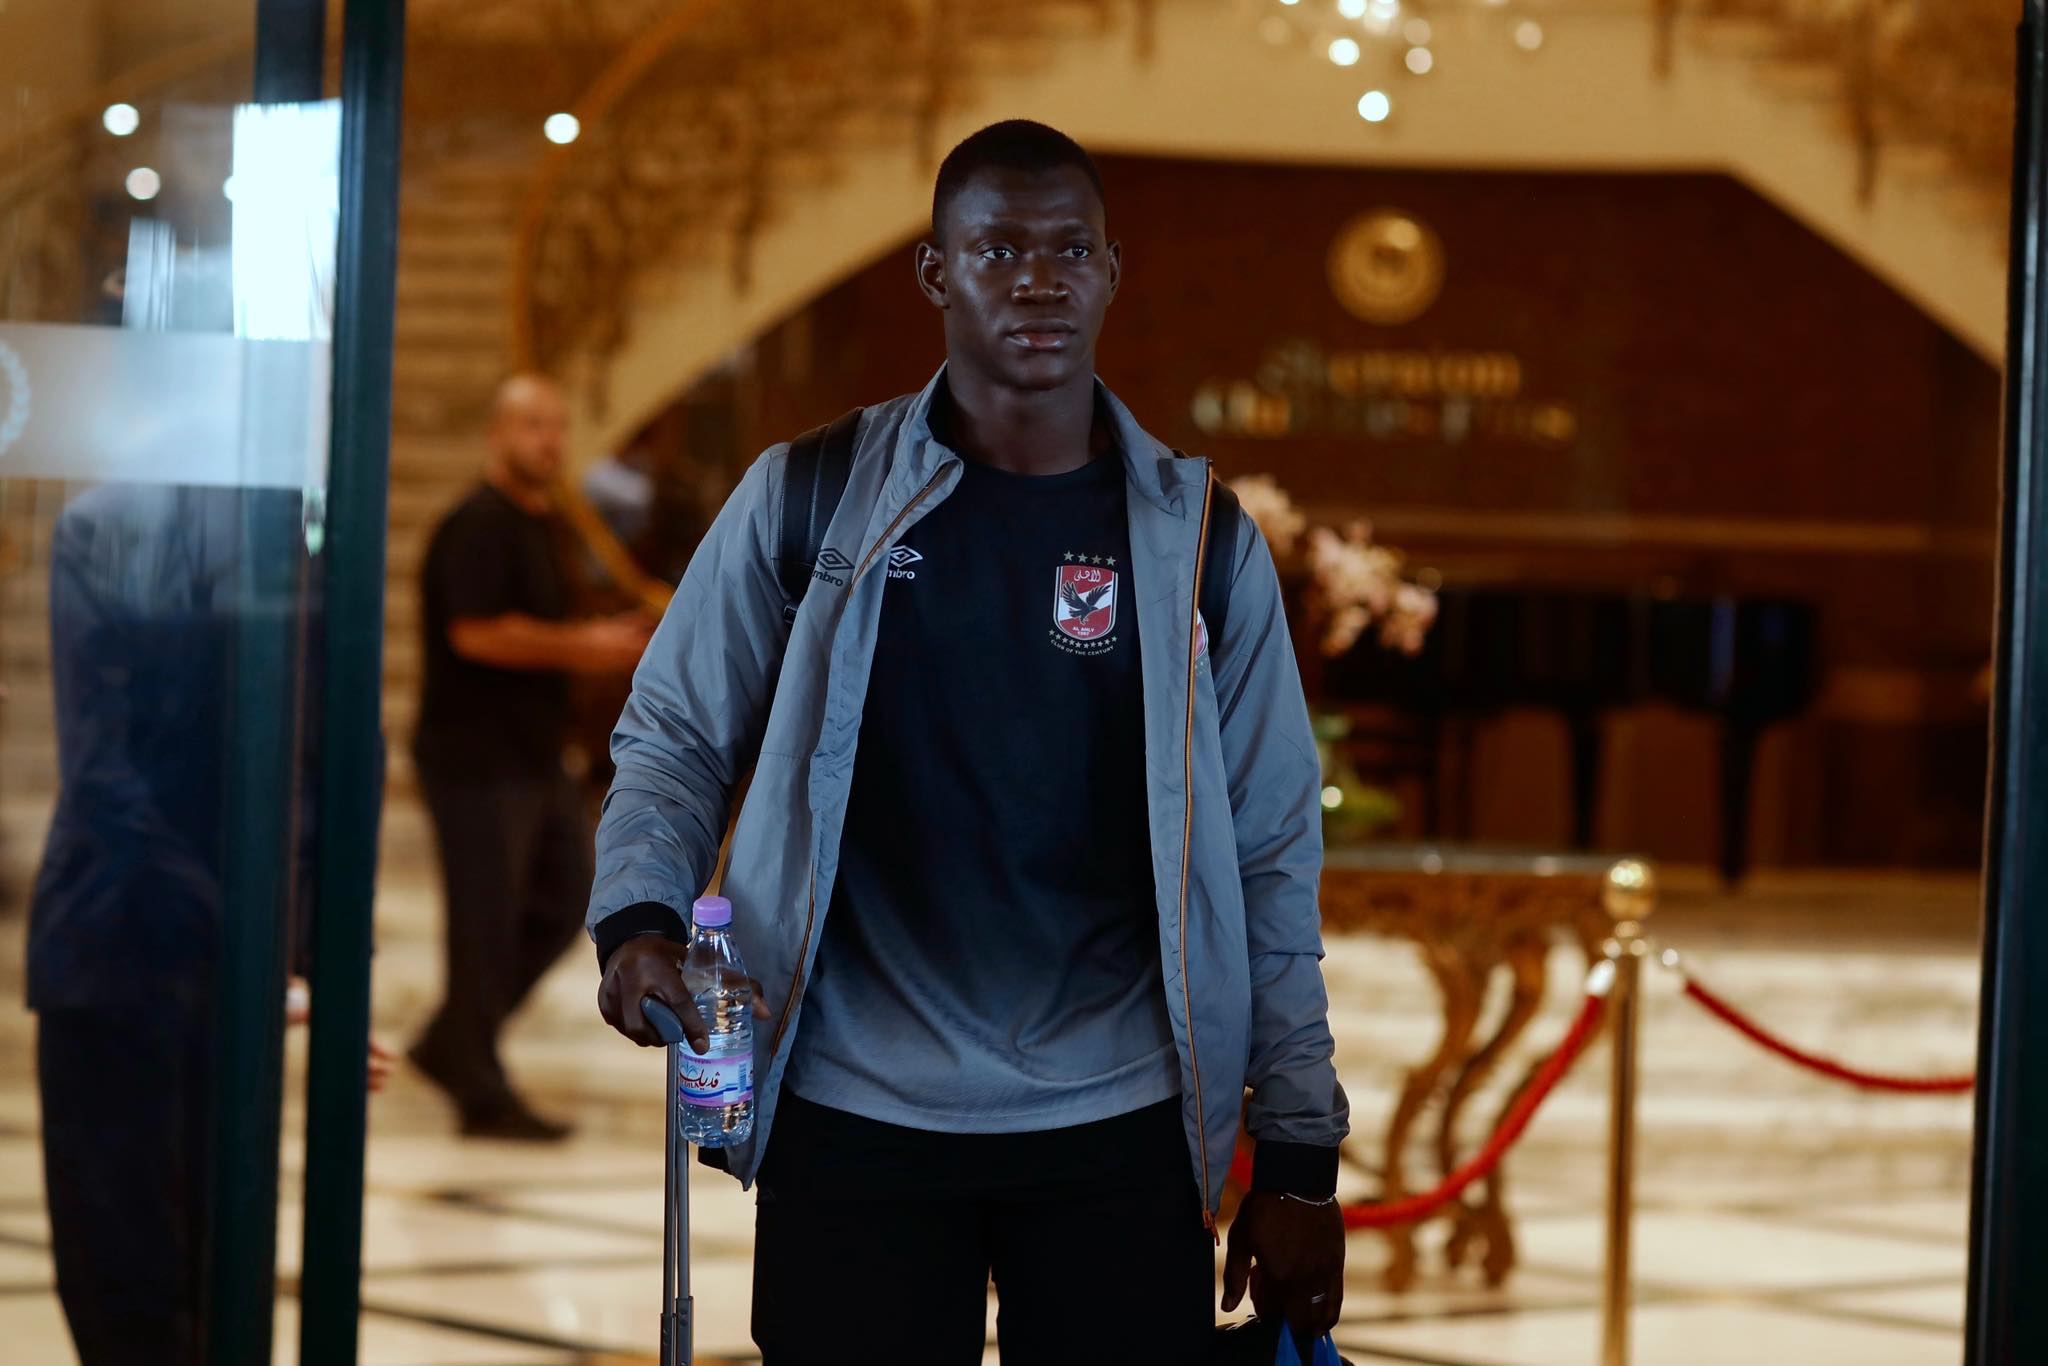 دوري أبطال إفريقيا| الأهلي يغادر فندق الإقامة متوجهًا إلى مباراة وفاق سطيف